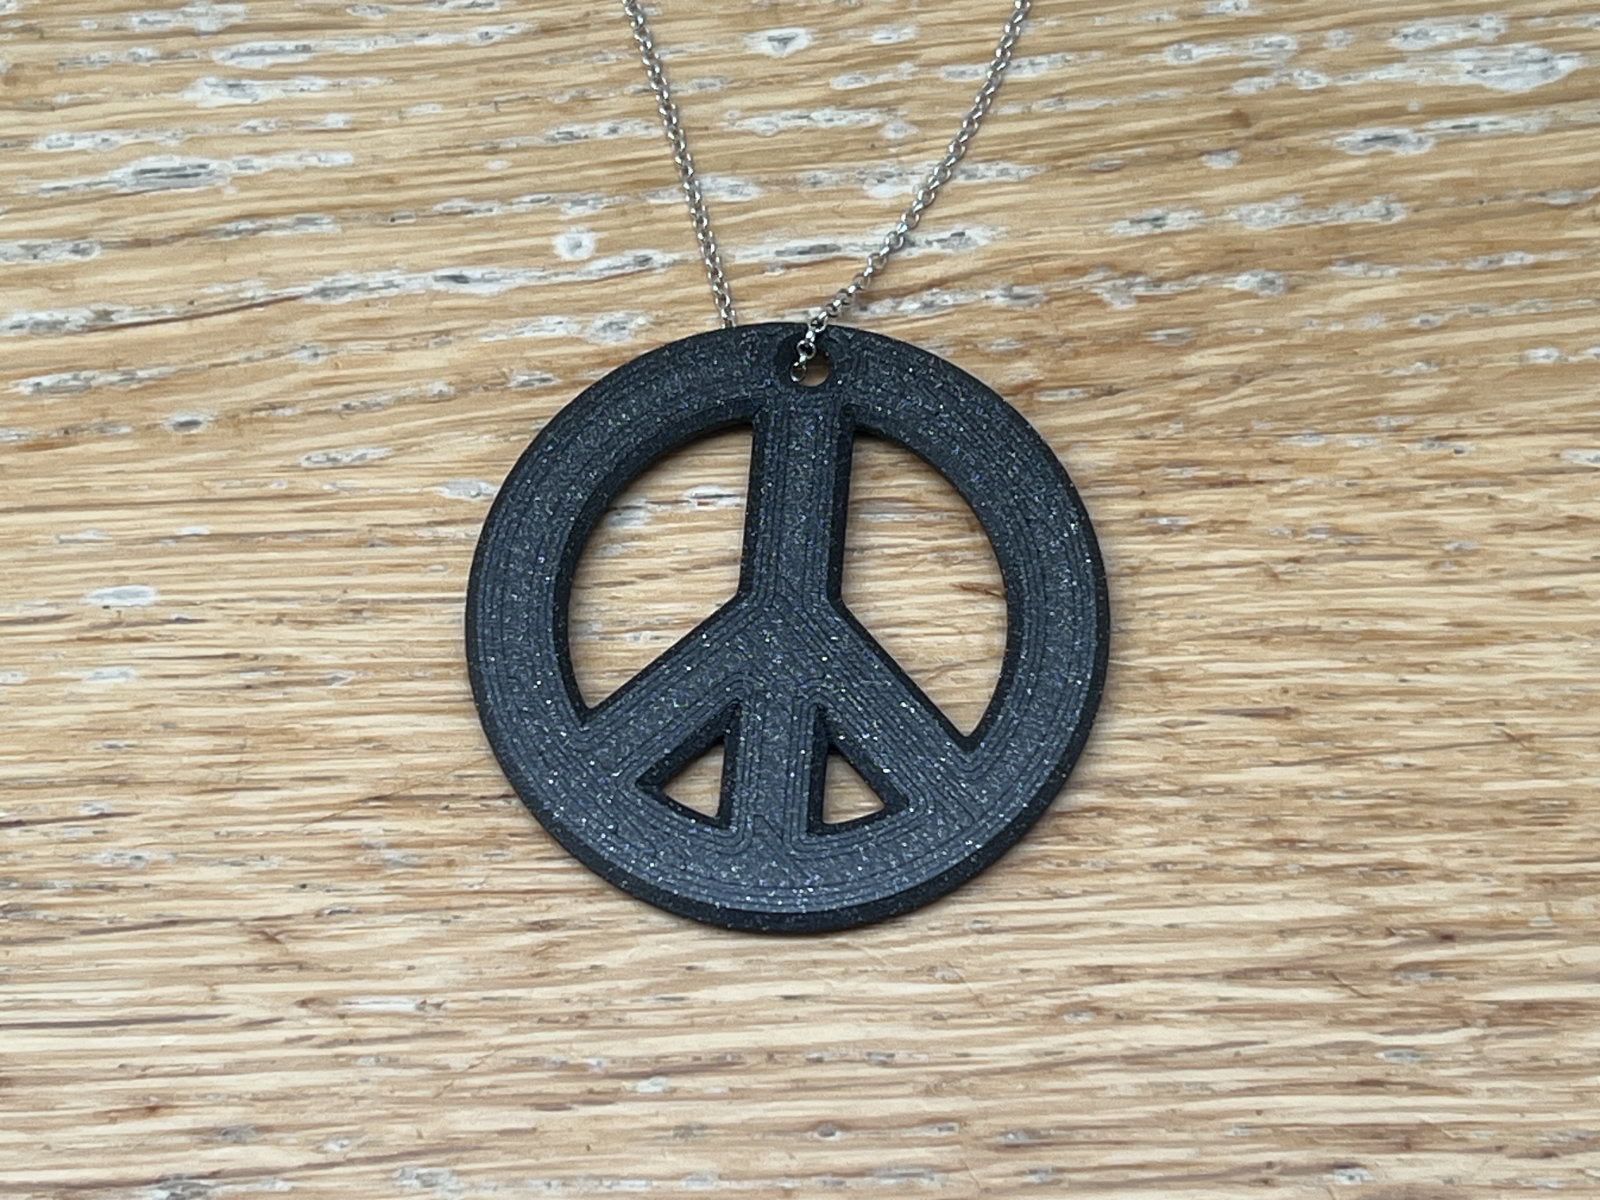 Peace sign pendant